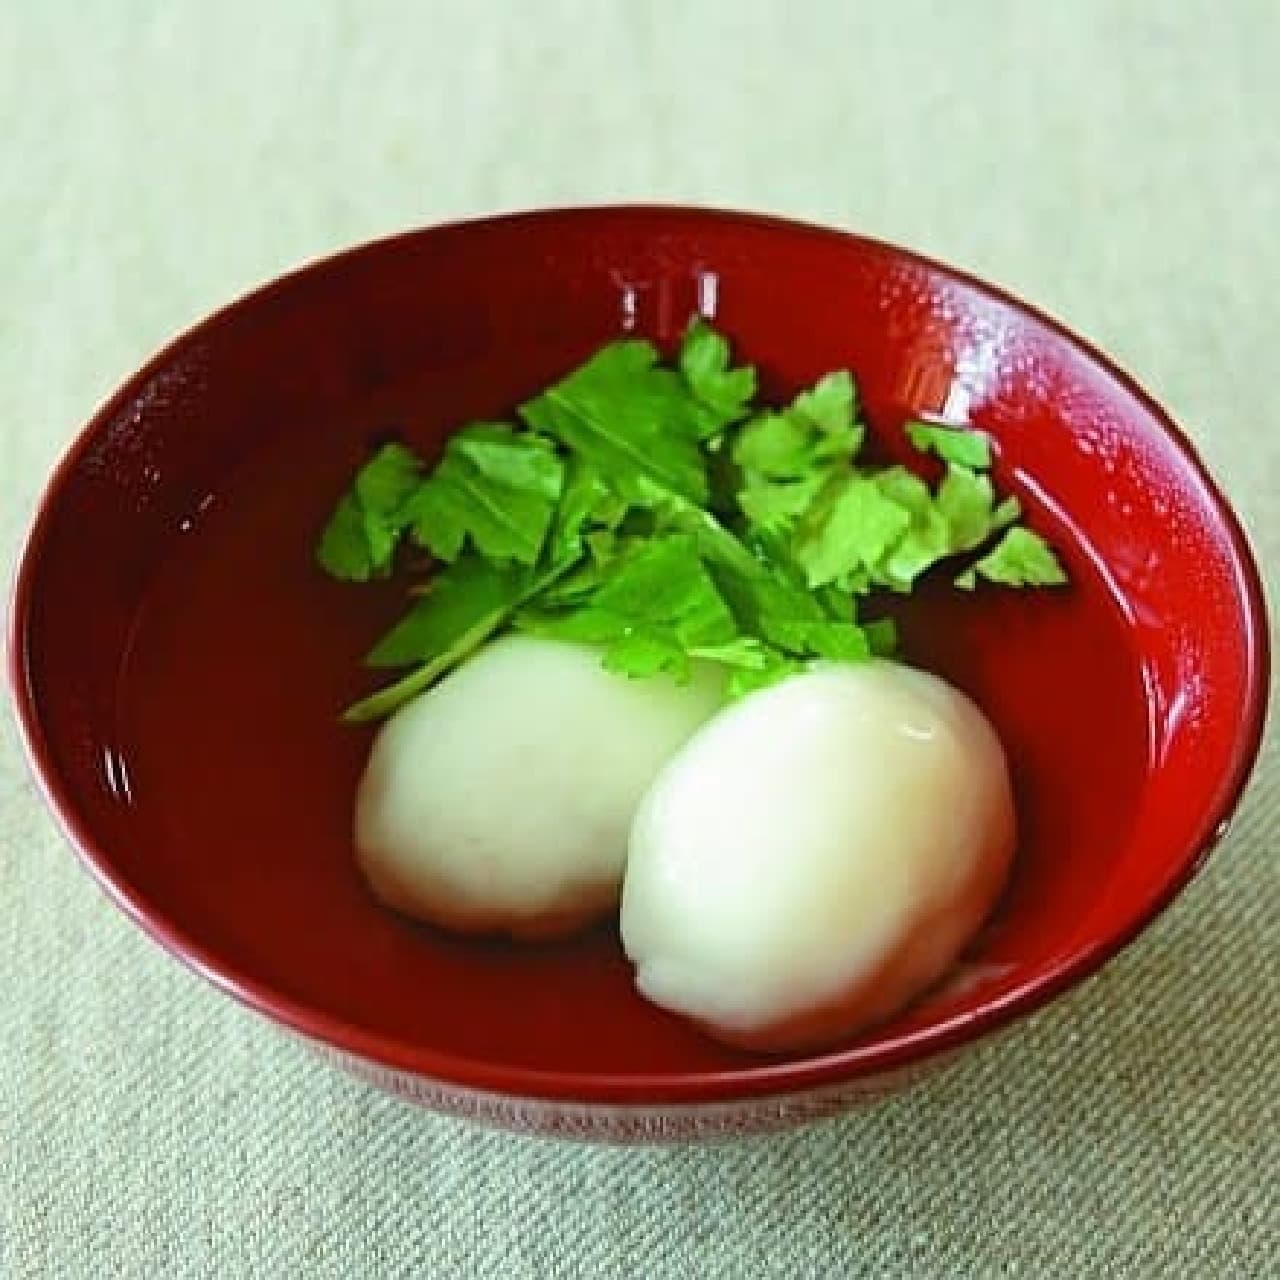 Akita Prefecture "Chicken Egg Juice"